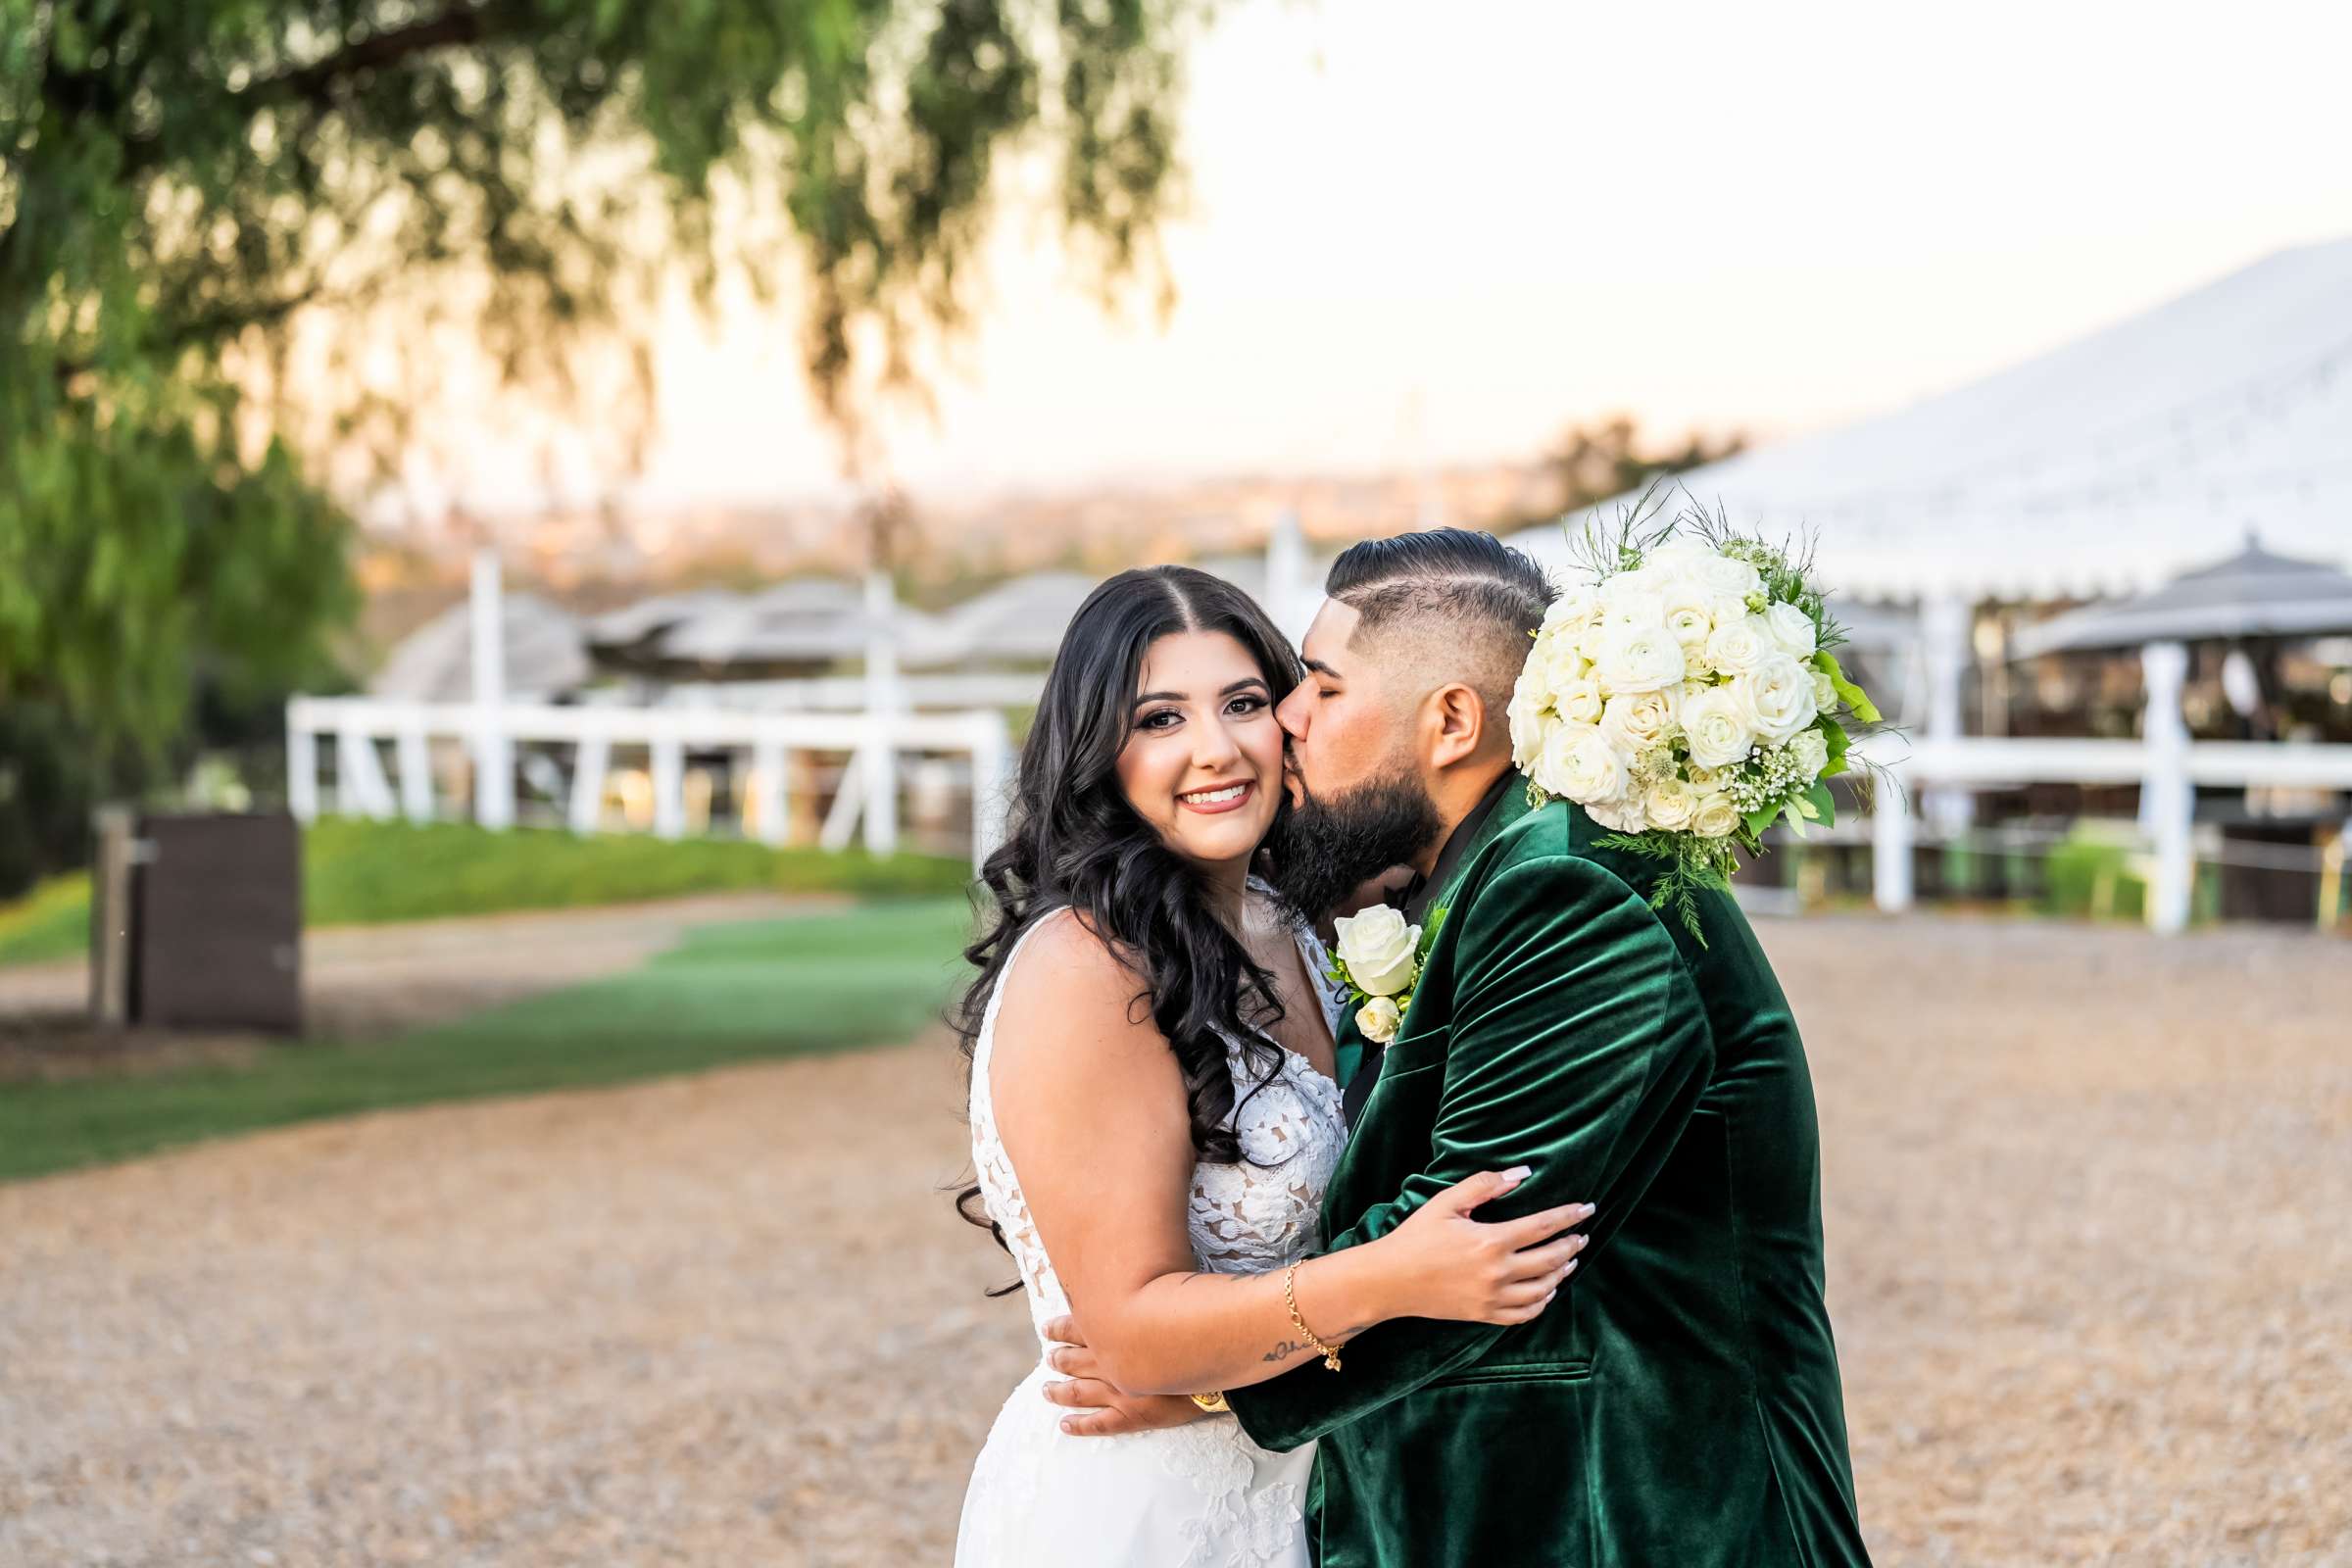 La Hacienda Wedding, Ashley and Alvaro Wedding Photo #12 by True Photography